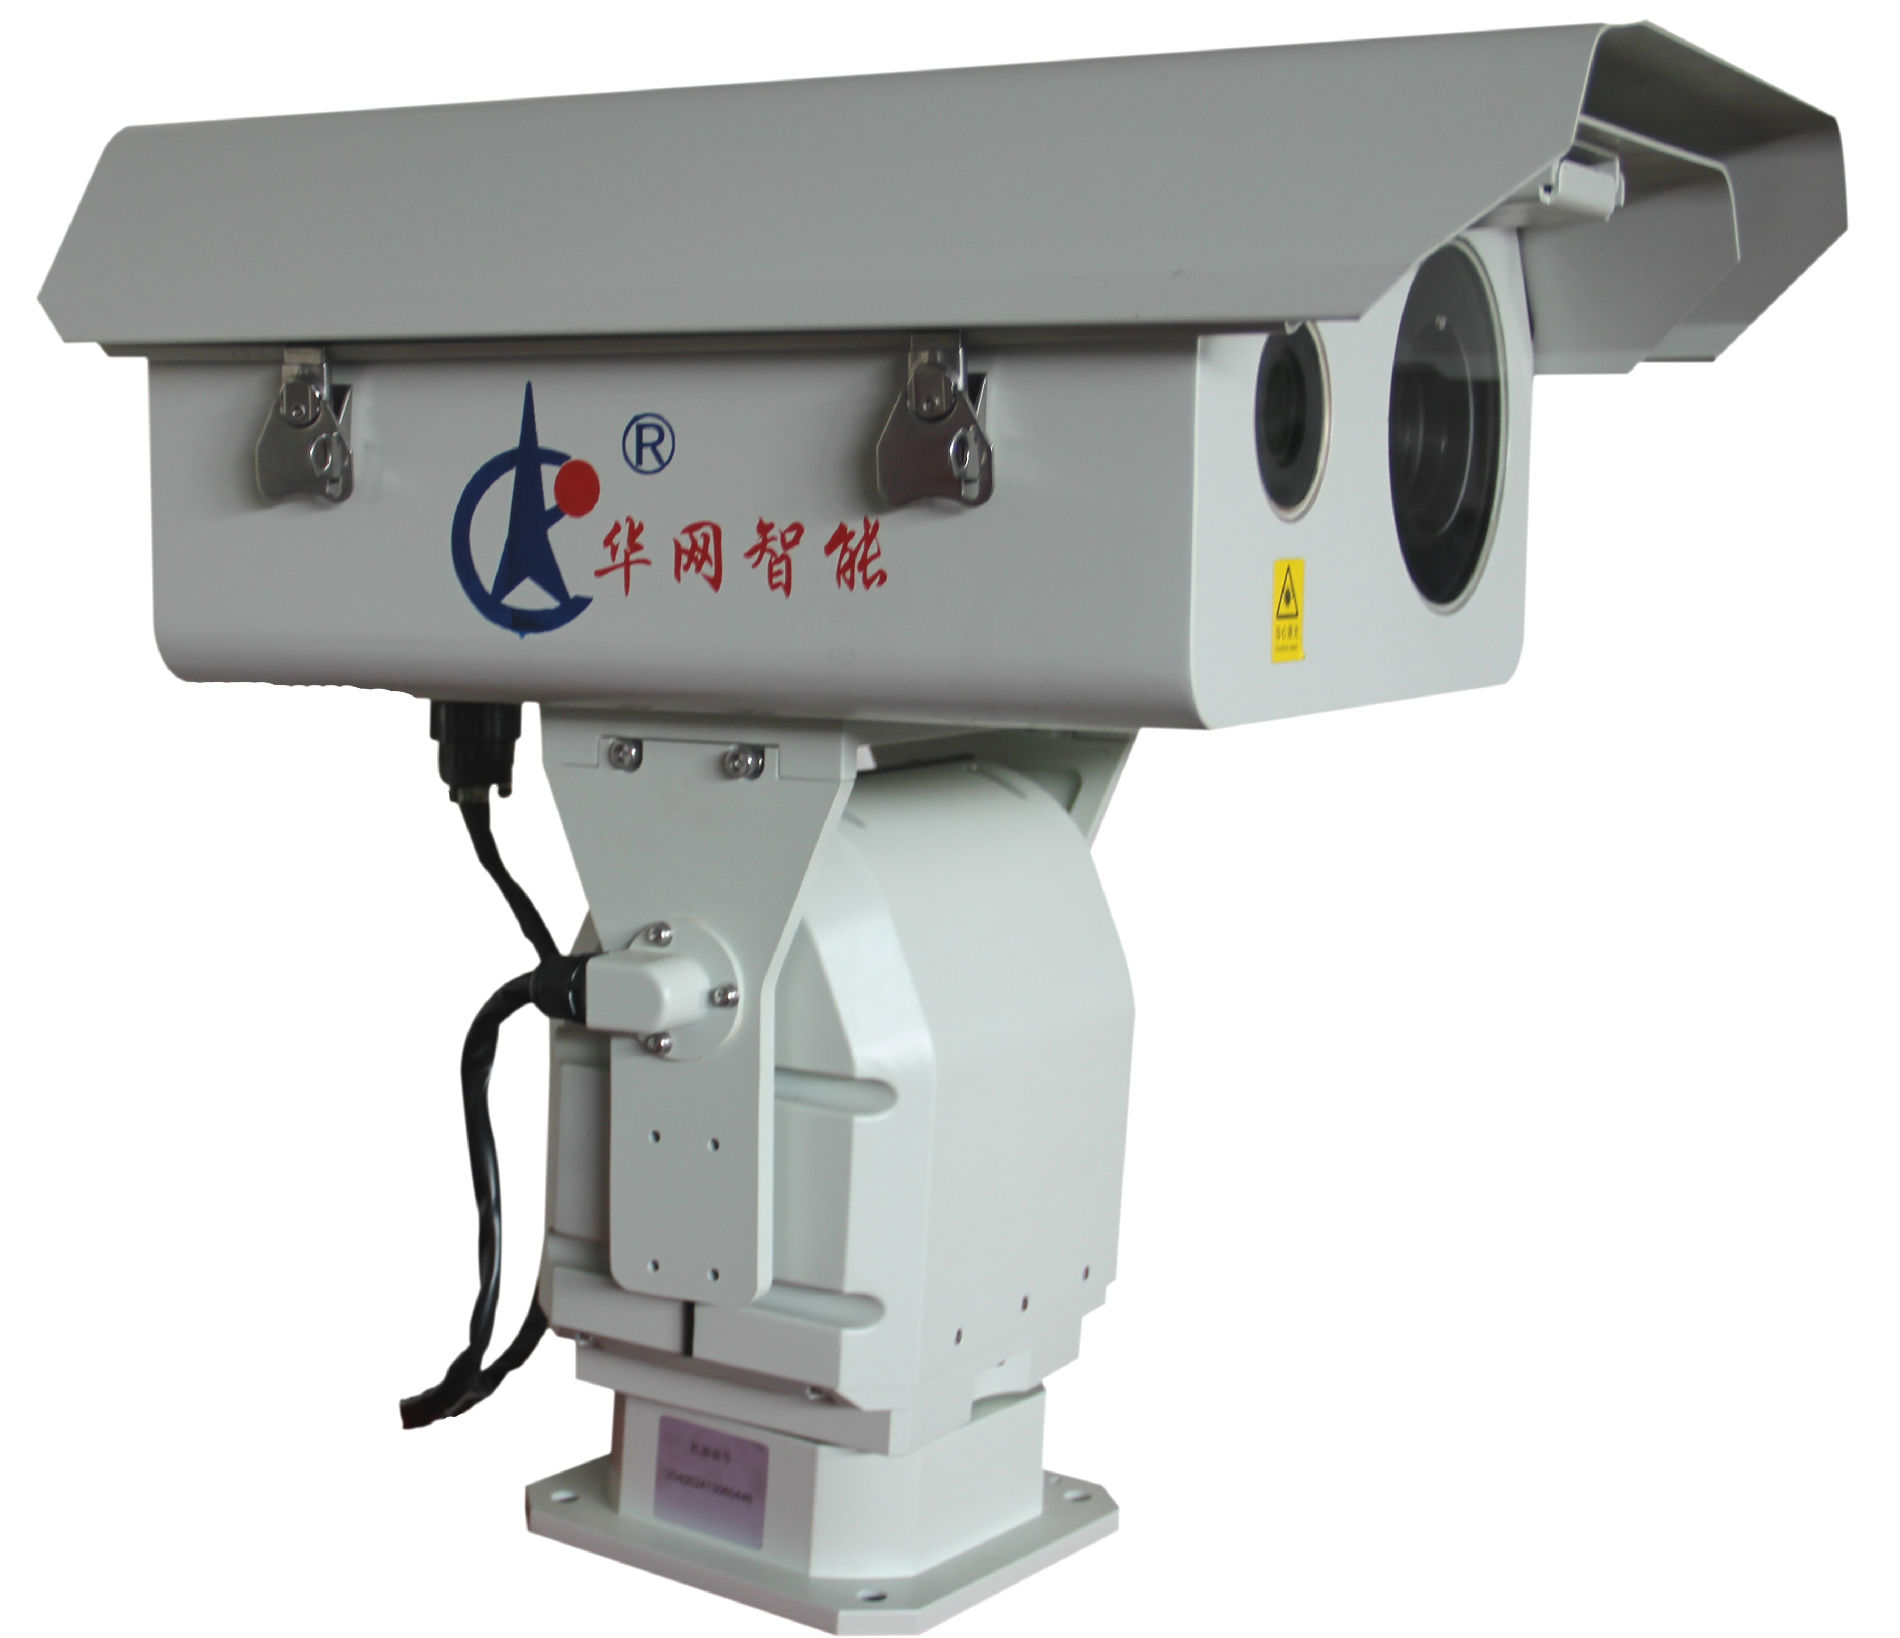 华网智能HW-YJY-2000GQ型高清激光夜视仪